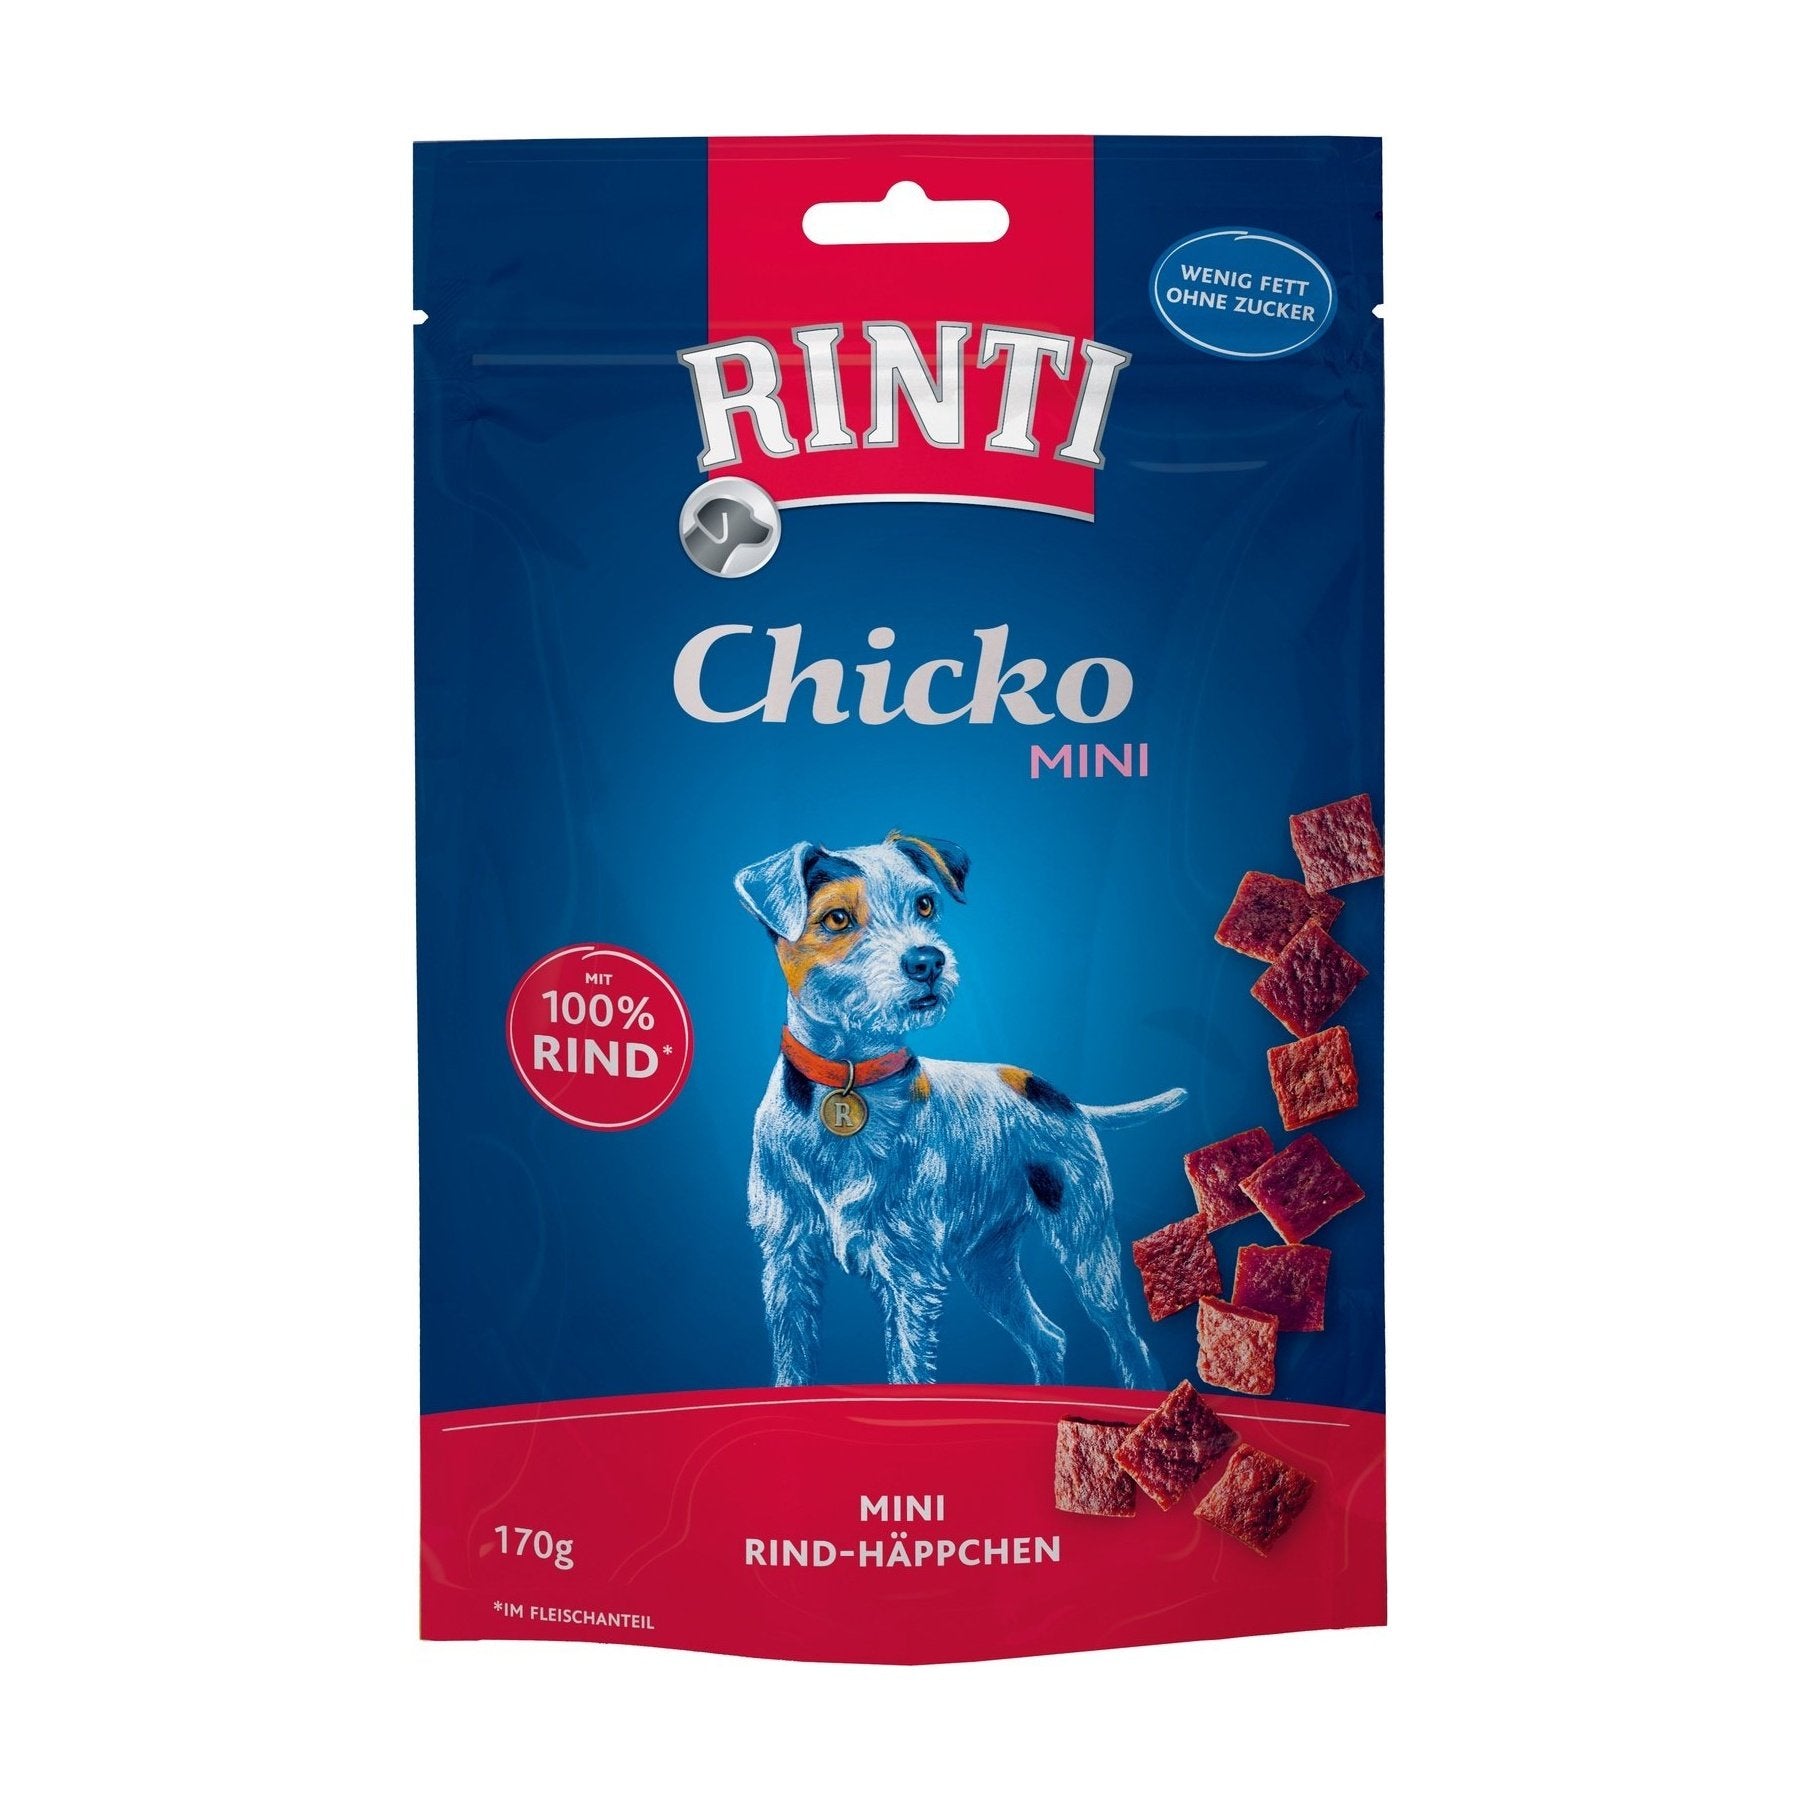 Rinti Chicko Mini - Kleine Stückchen aus Rind im Vorratspack